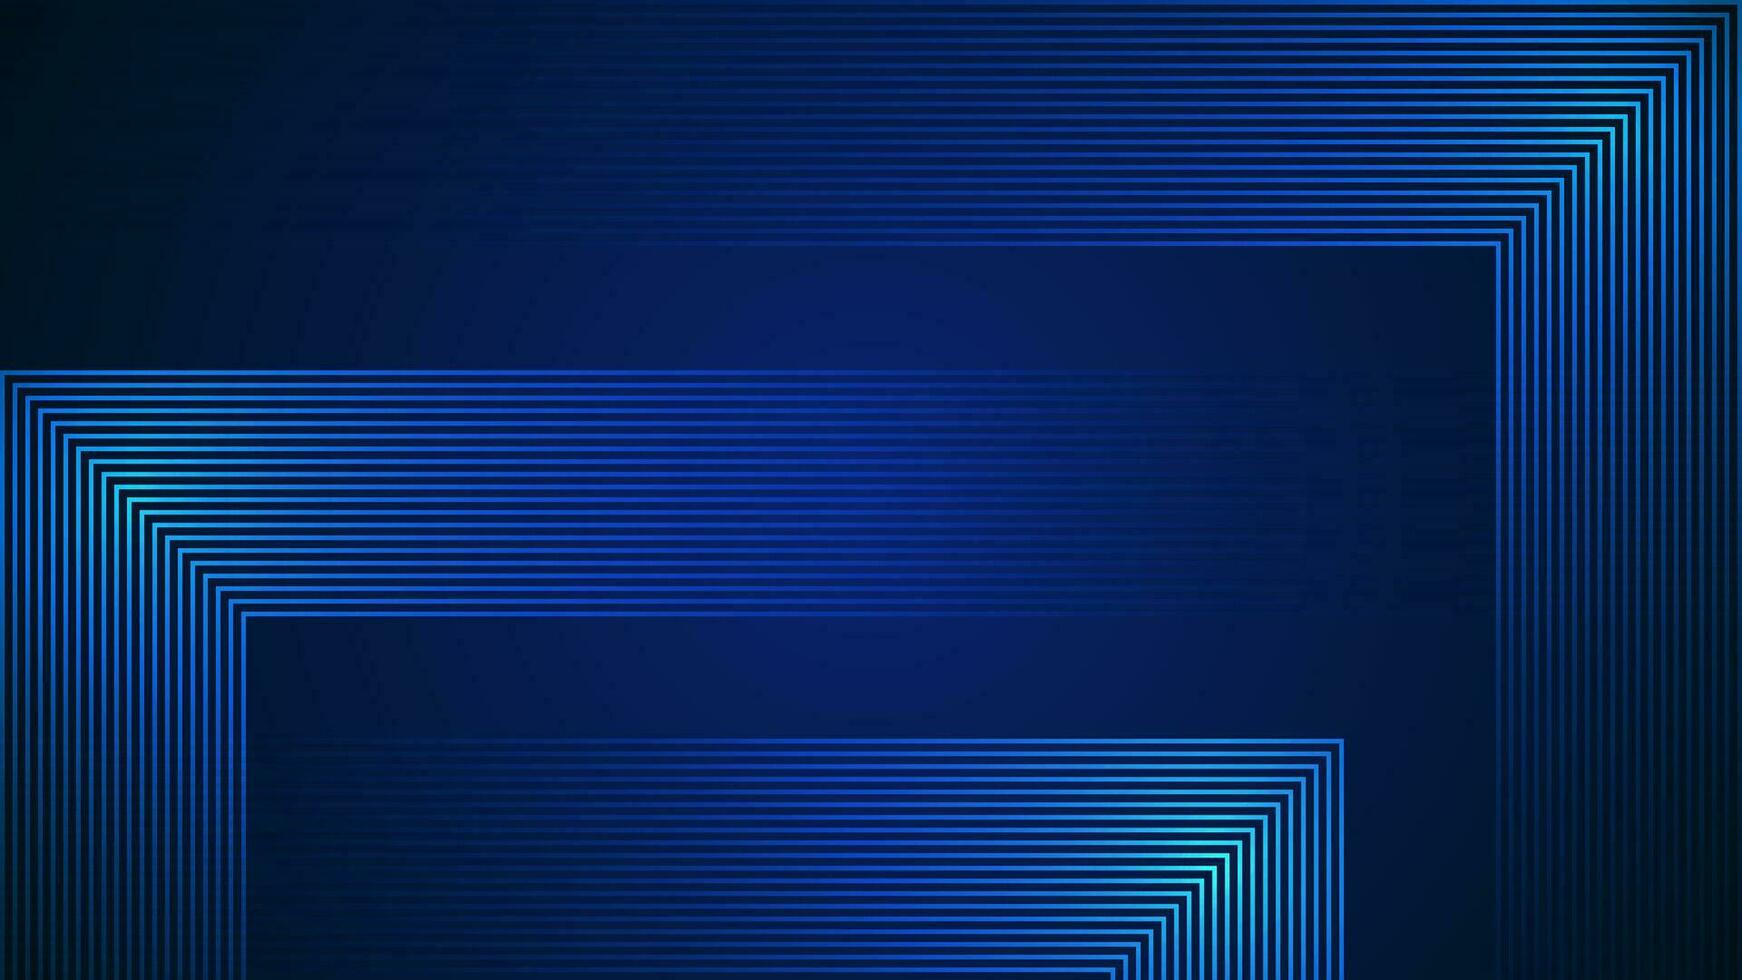 dunkel Blau einfach abstrakt Hintergrund mit Linien im ein geometrisch Stil wie das Main Element. vektor